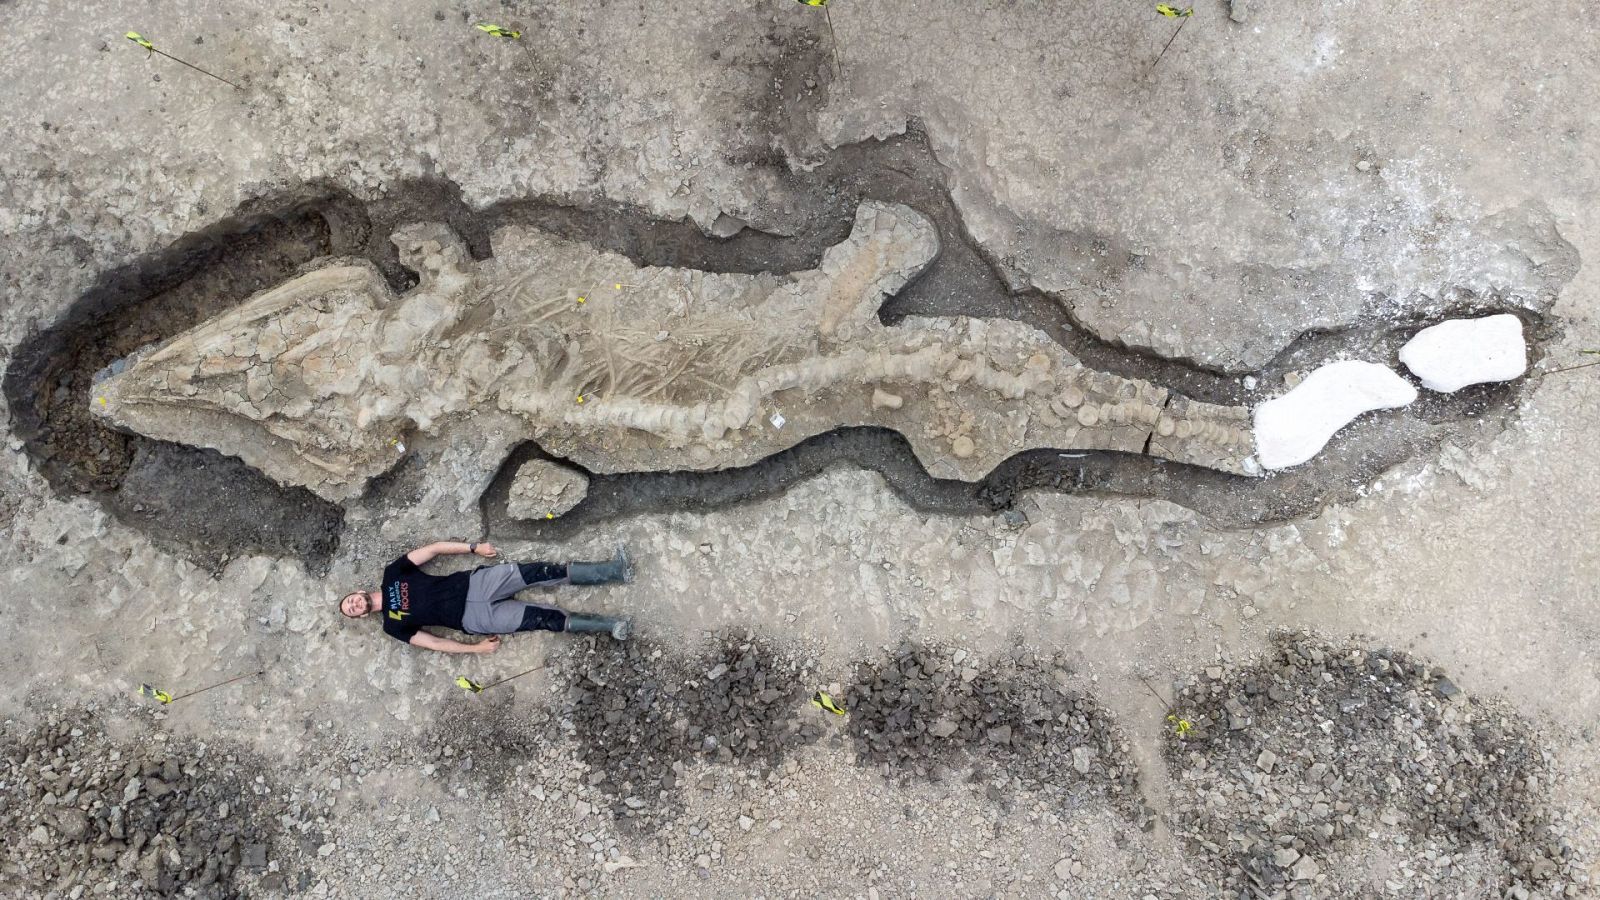 Un hombre posa junto al "dragón marino" fosilizado